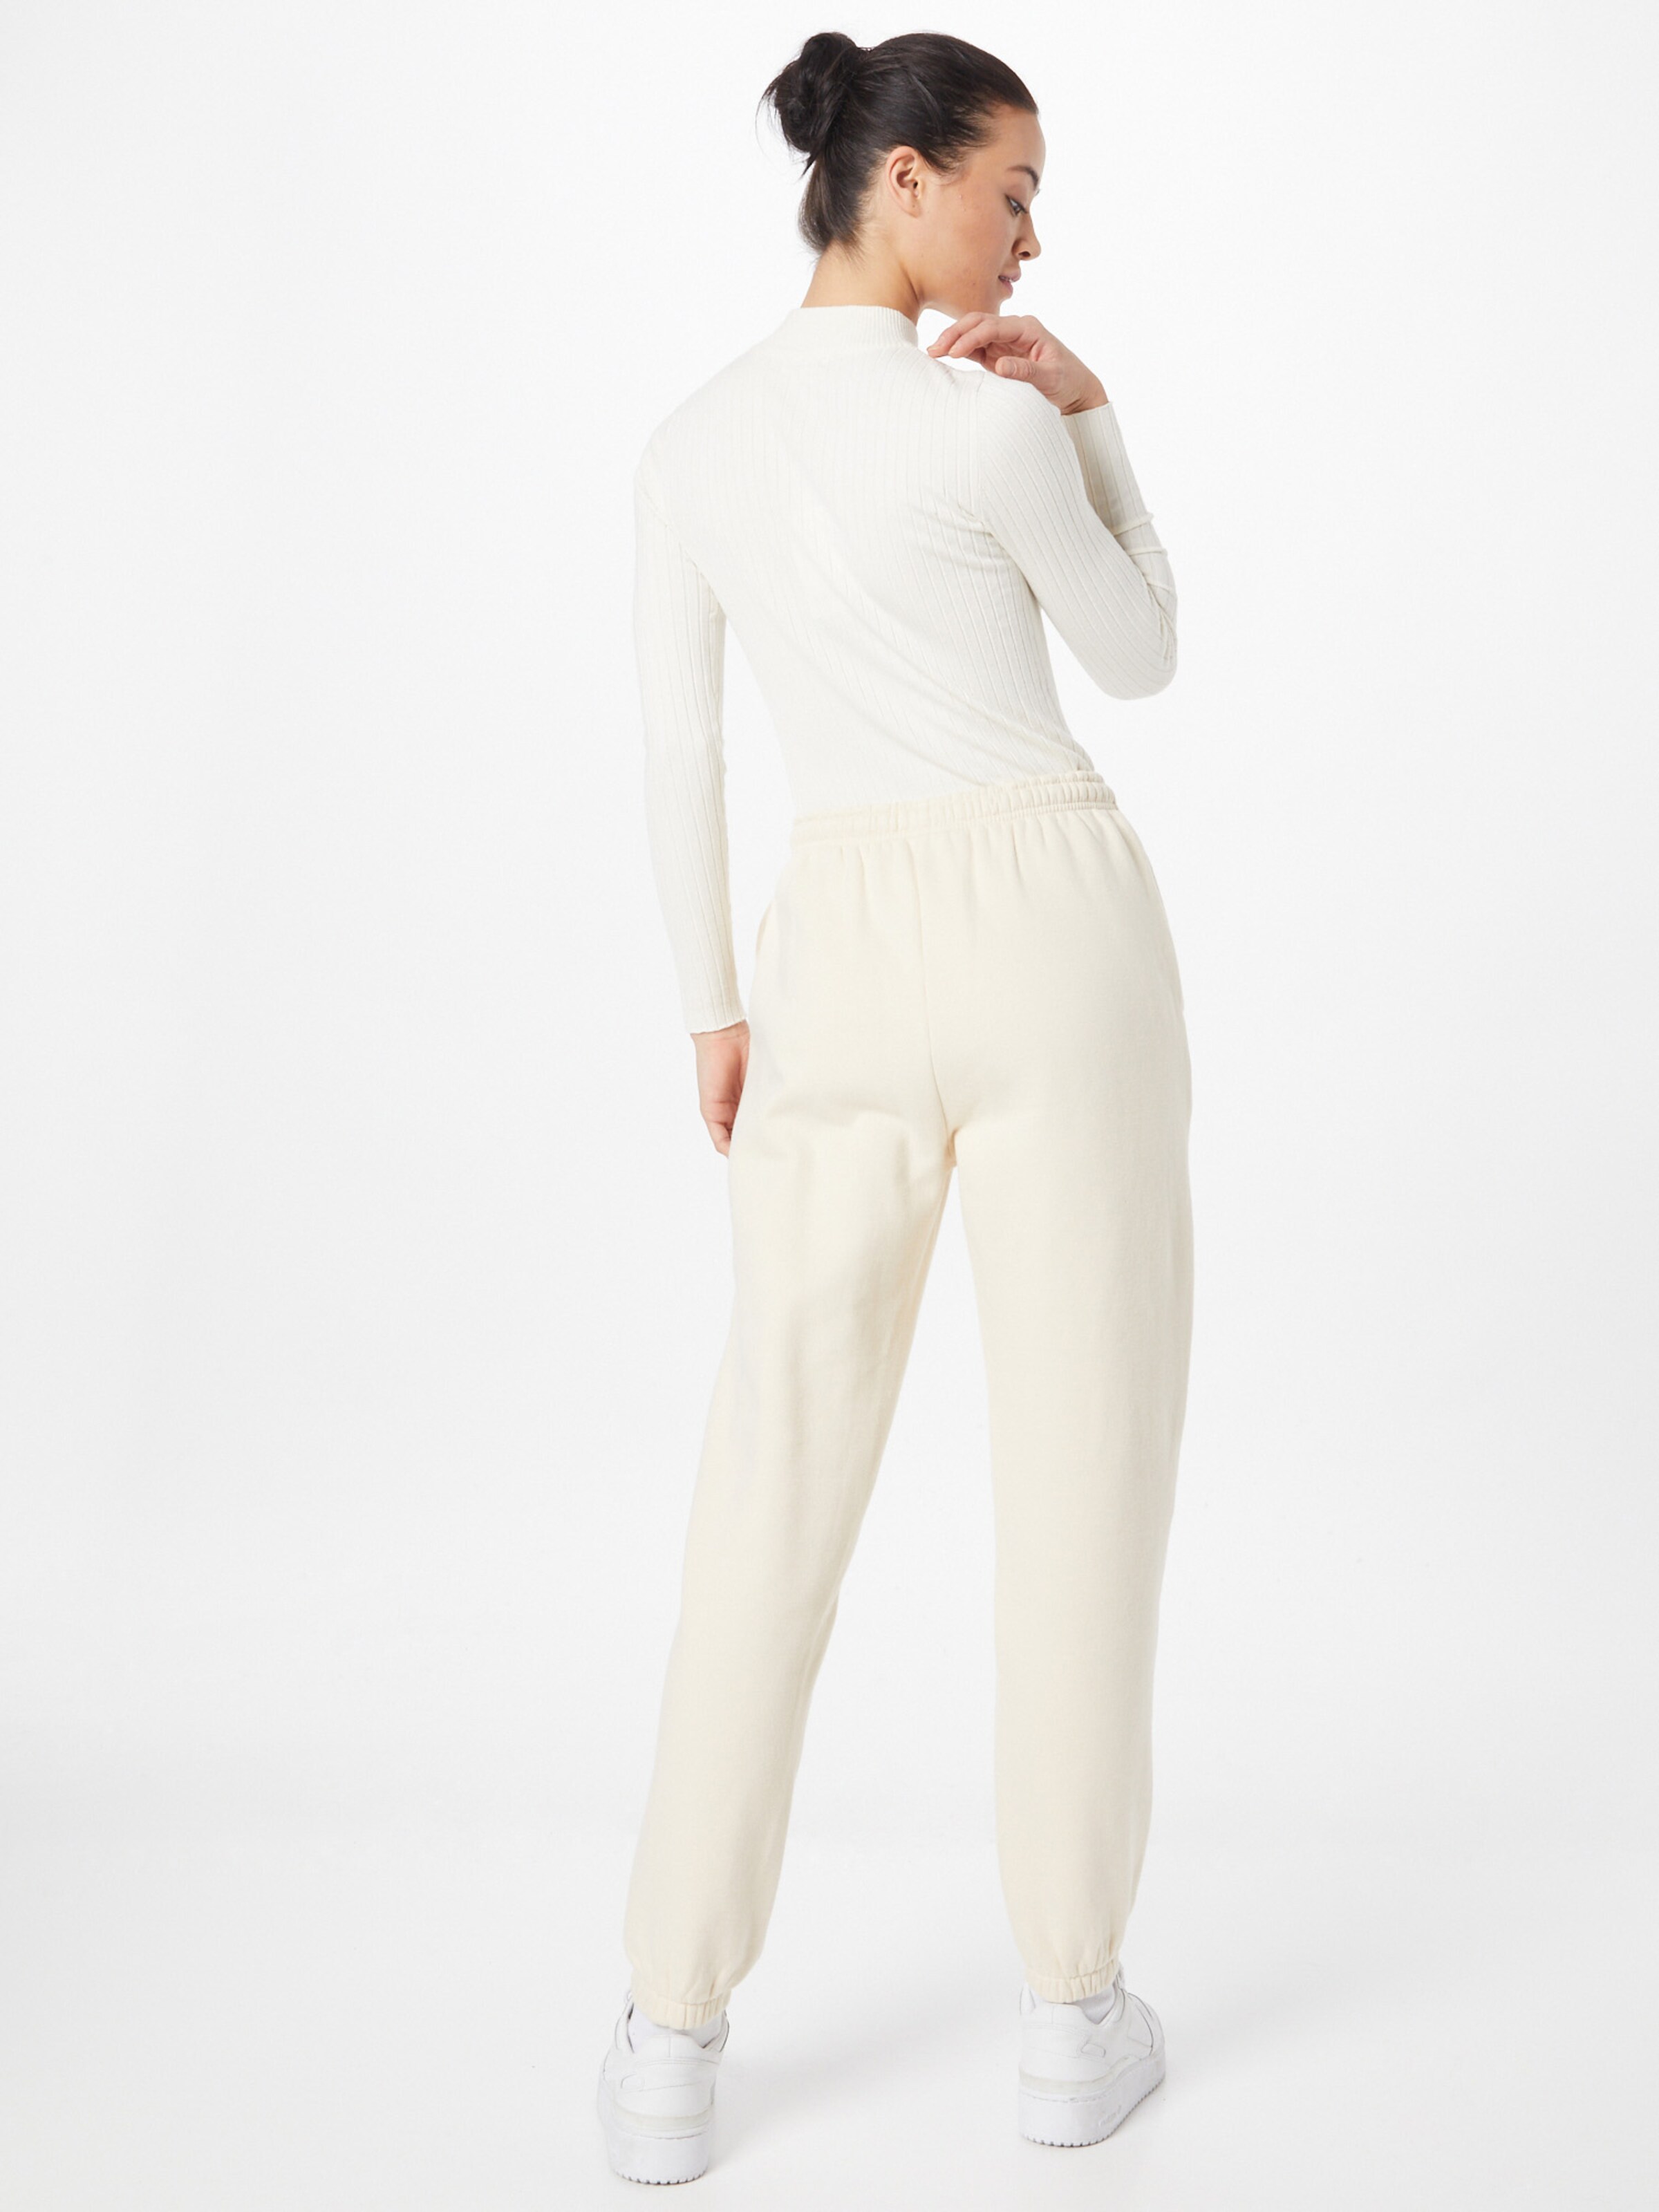 Femme Pantalon EASY Comfort Studio by Catwalk Junkie en Crème 